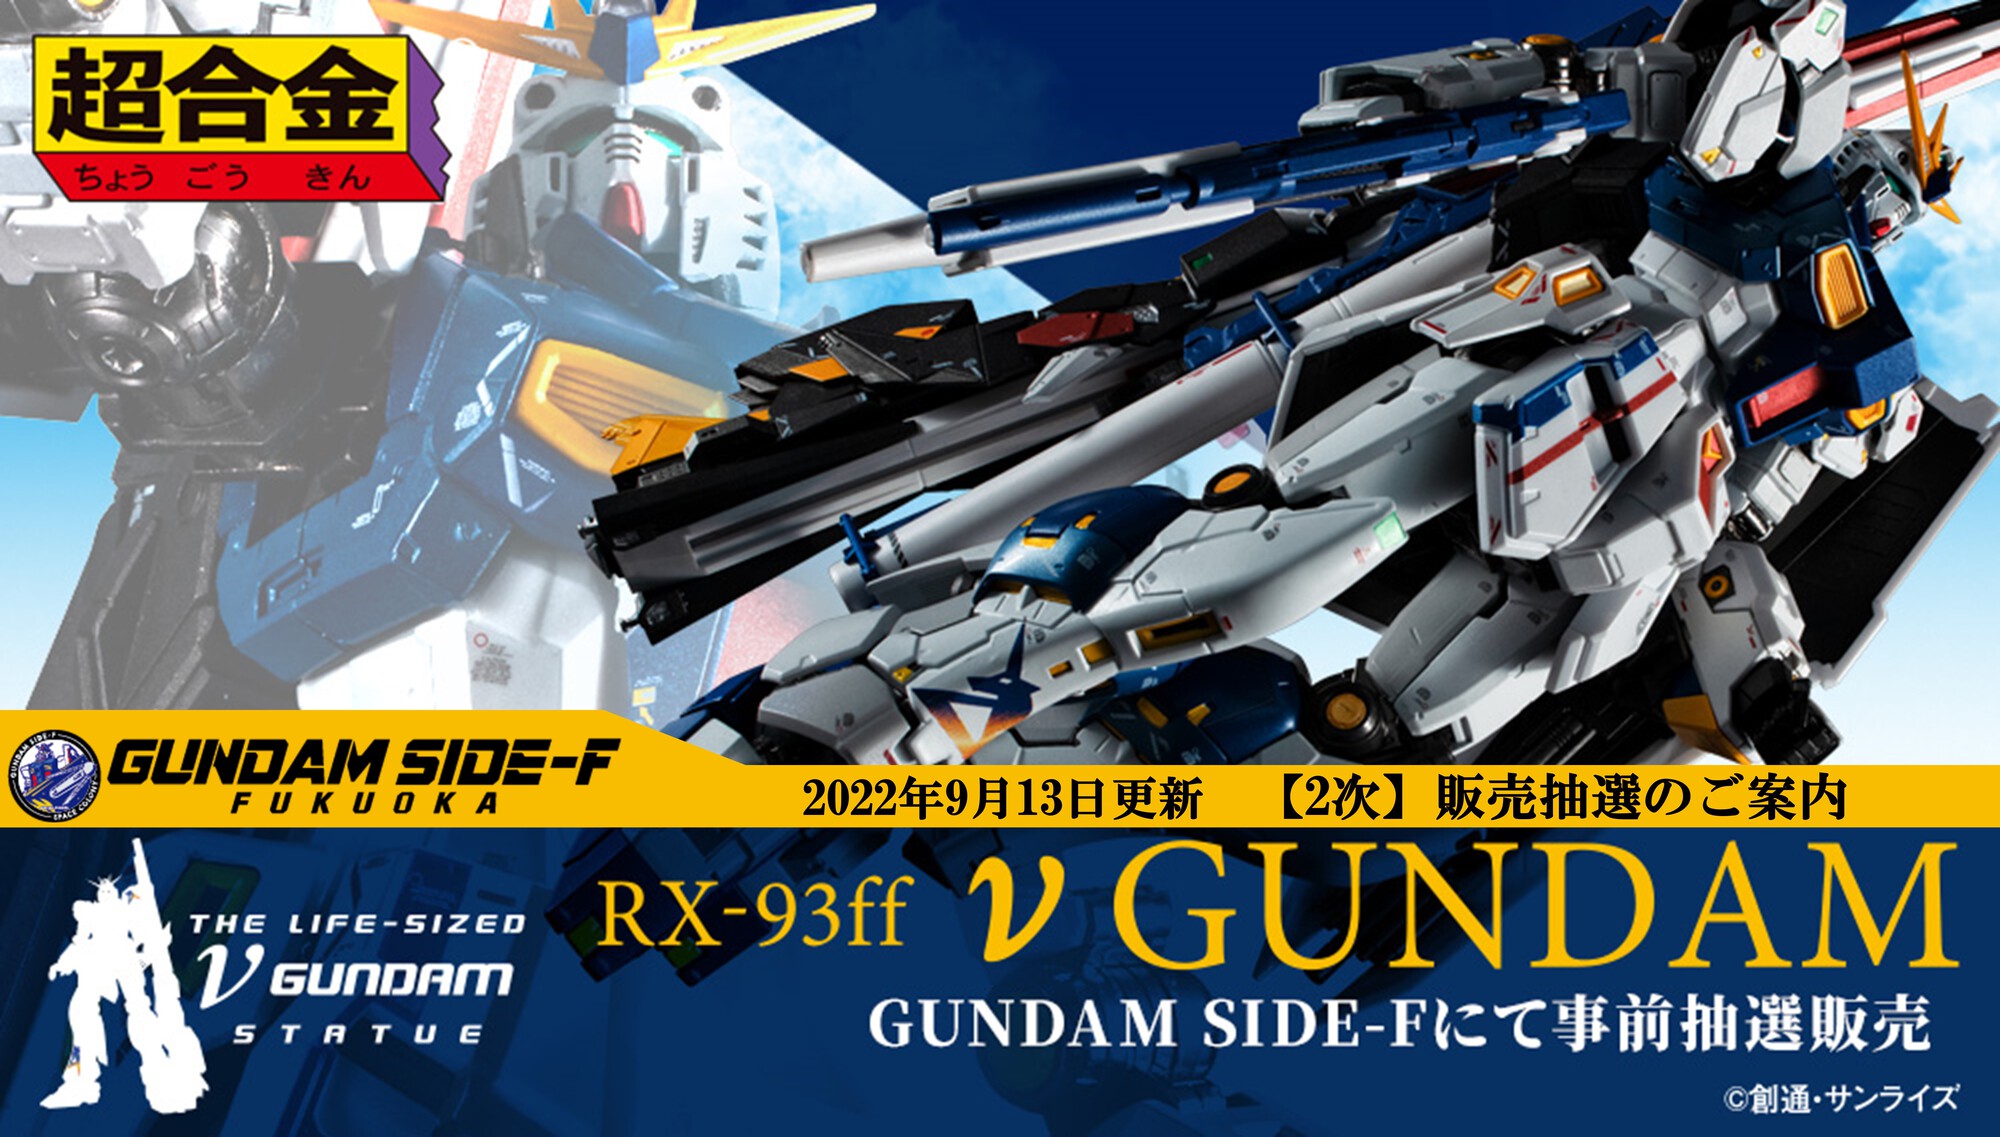 廉価 超合金 RX-93ff νガンダム ららぽーと福岡 GUNDAM SIDE-F